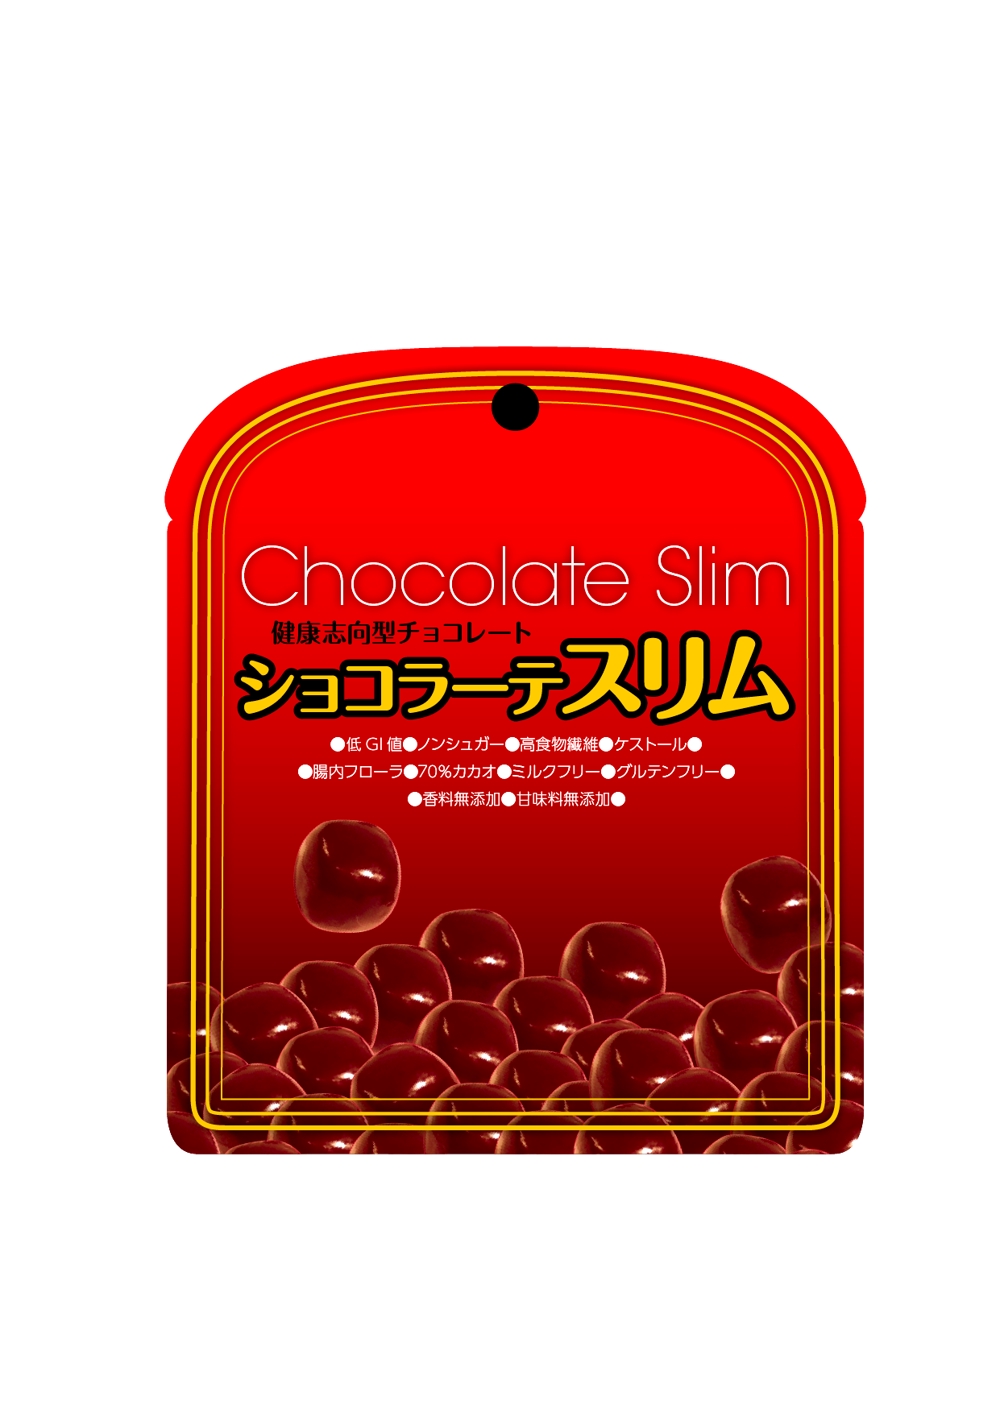 新商品ダイエットチョコレートのパッケージデザイン募集